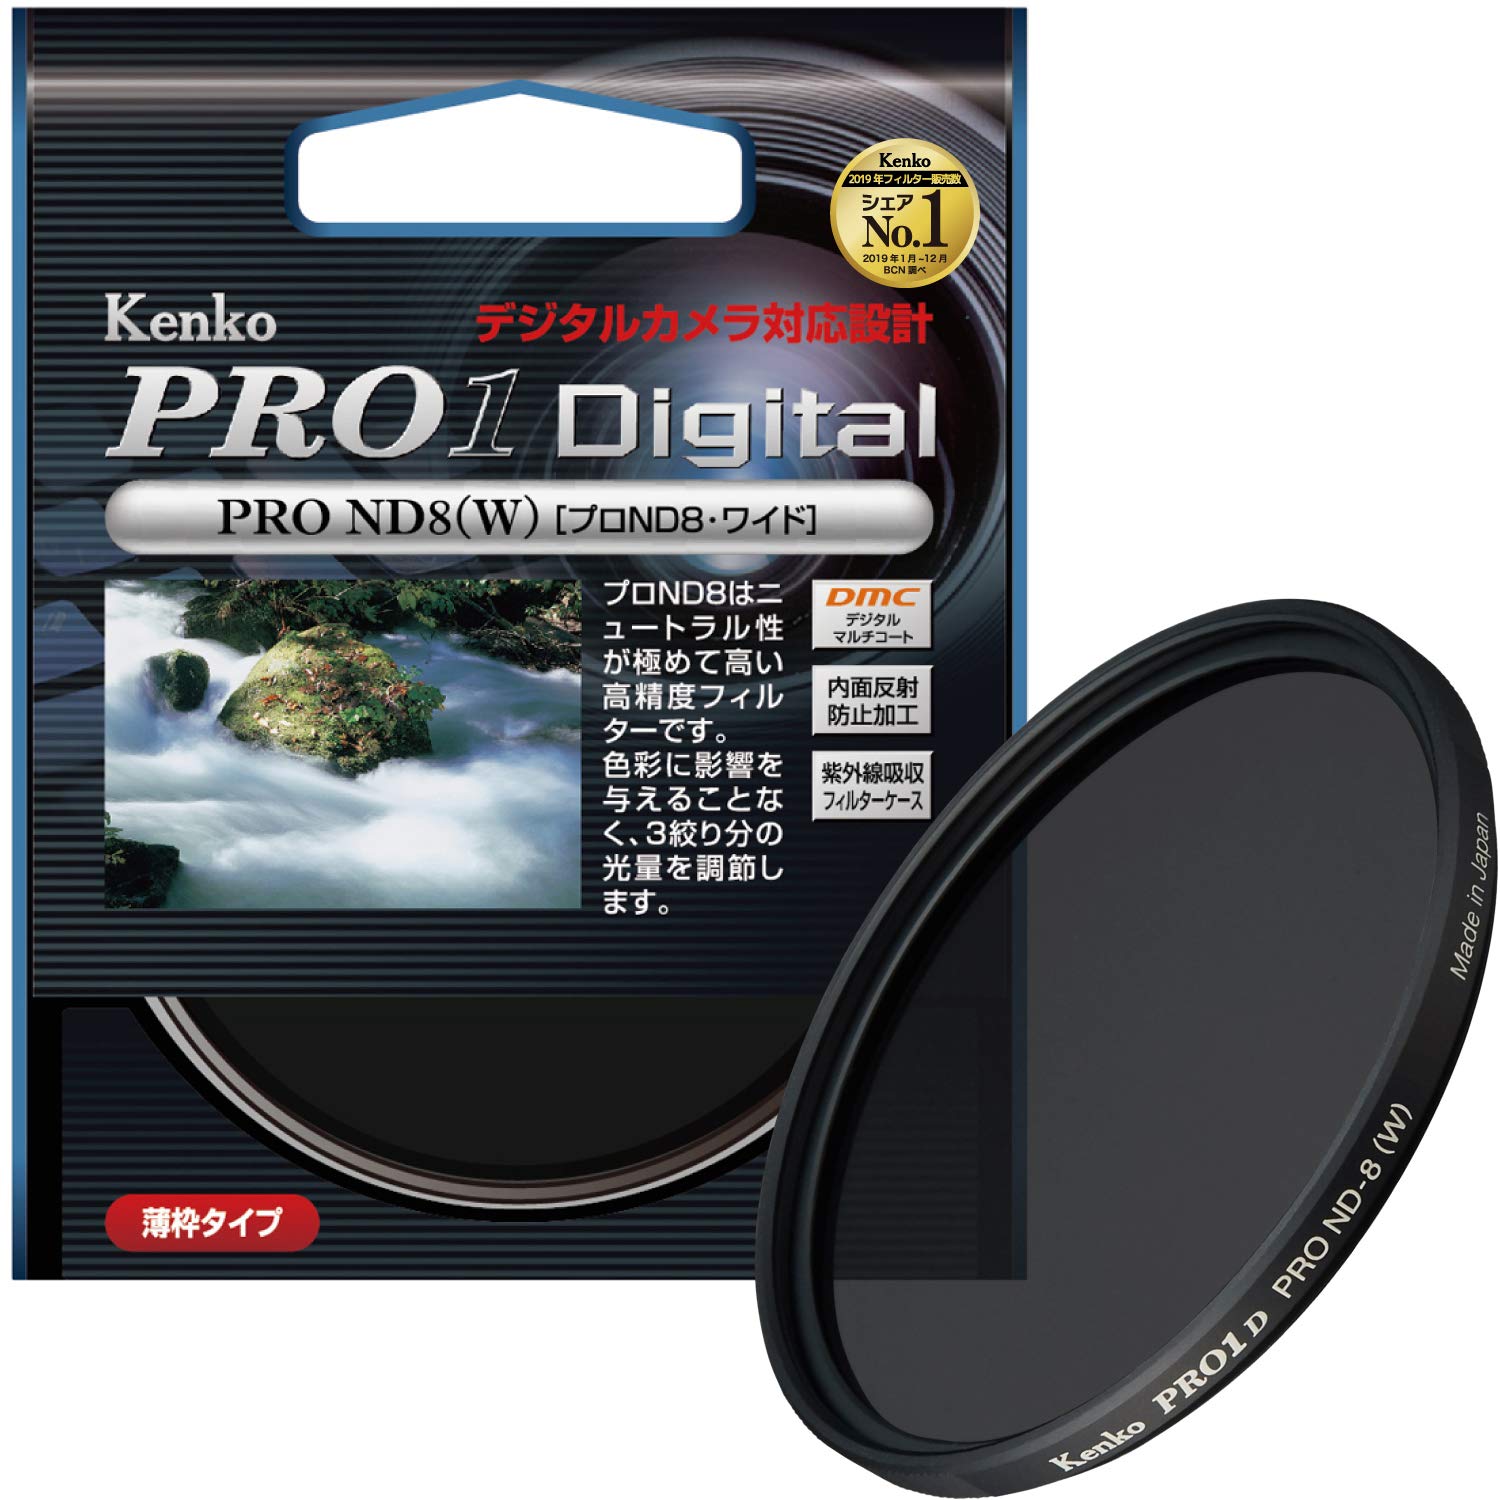 Kenko カメラ用フィルター PRO1D プロND8 (W) 67mm 光量調節用 267431